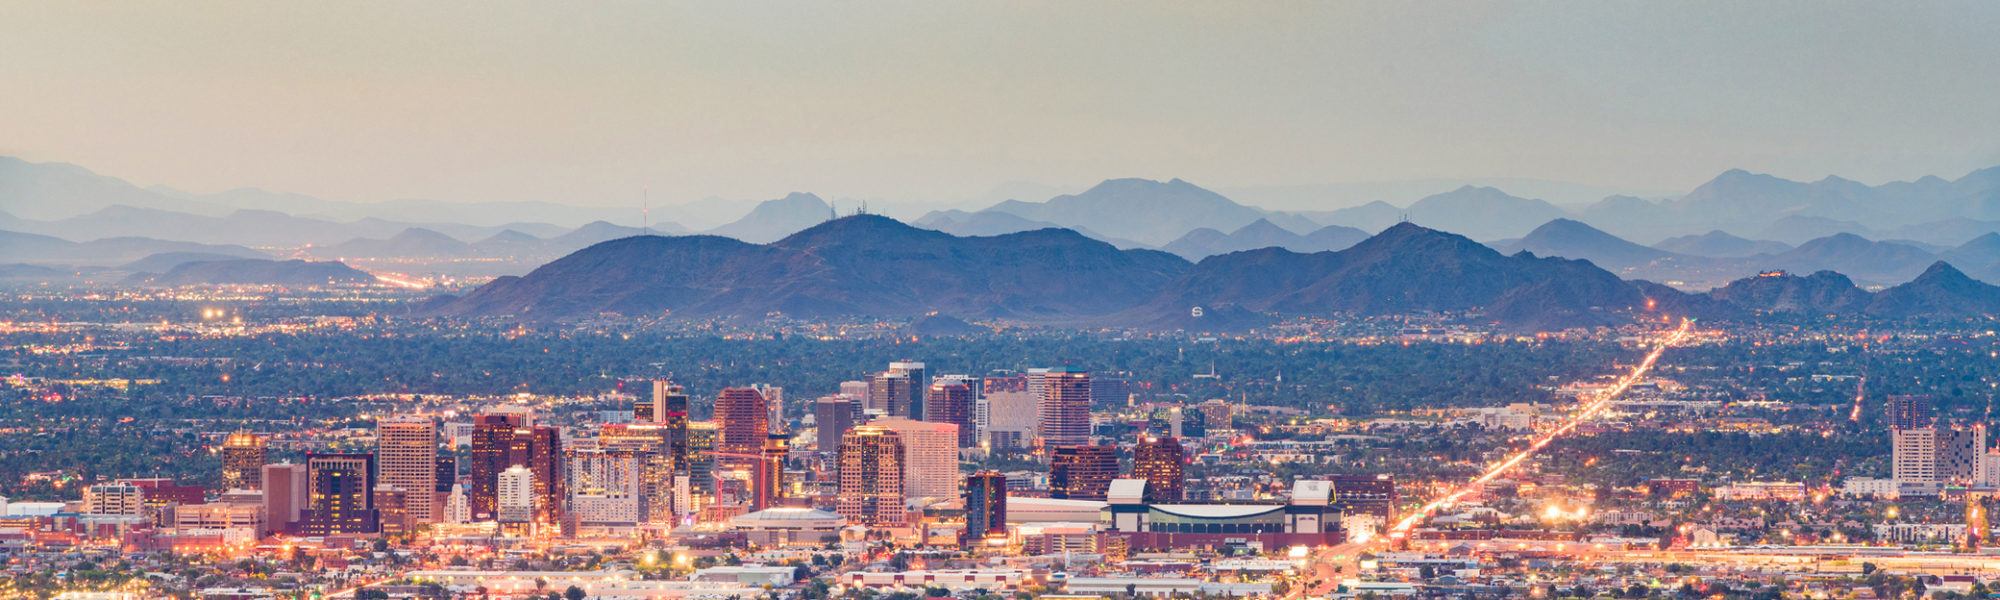 Downtown cityscape of Phoenix, Arizona, USA